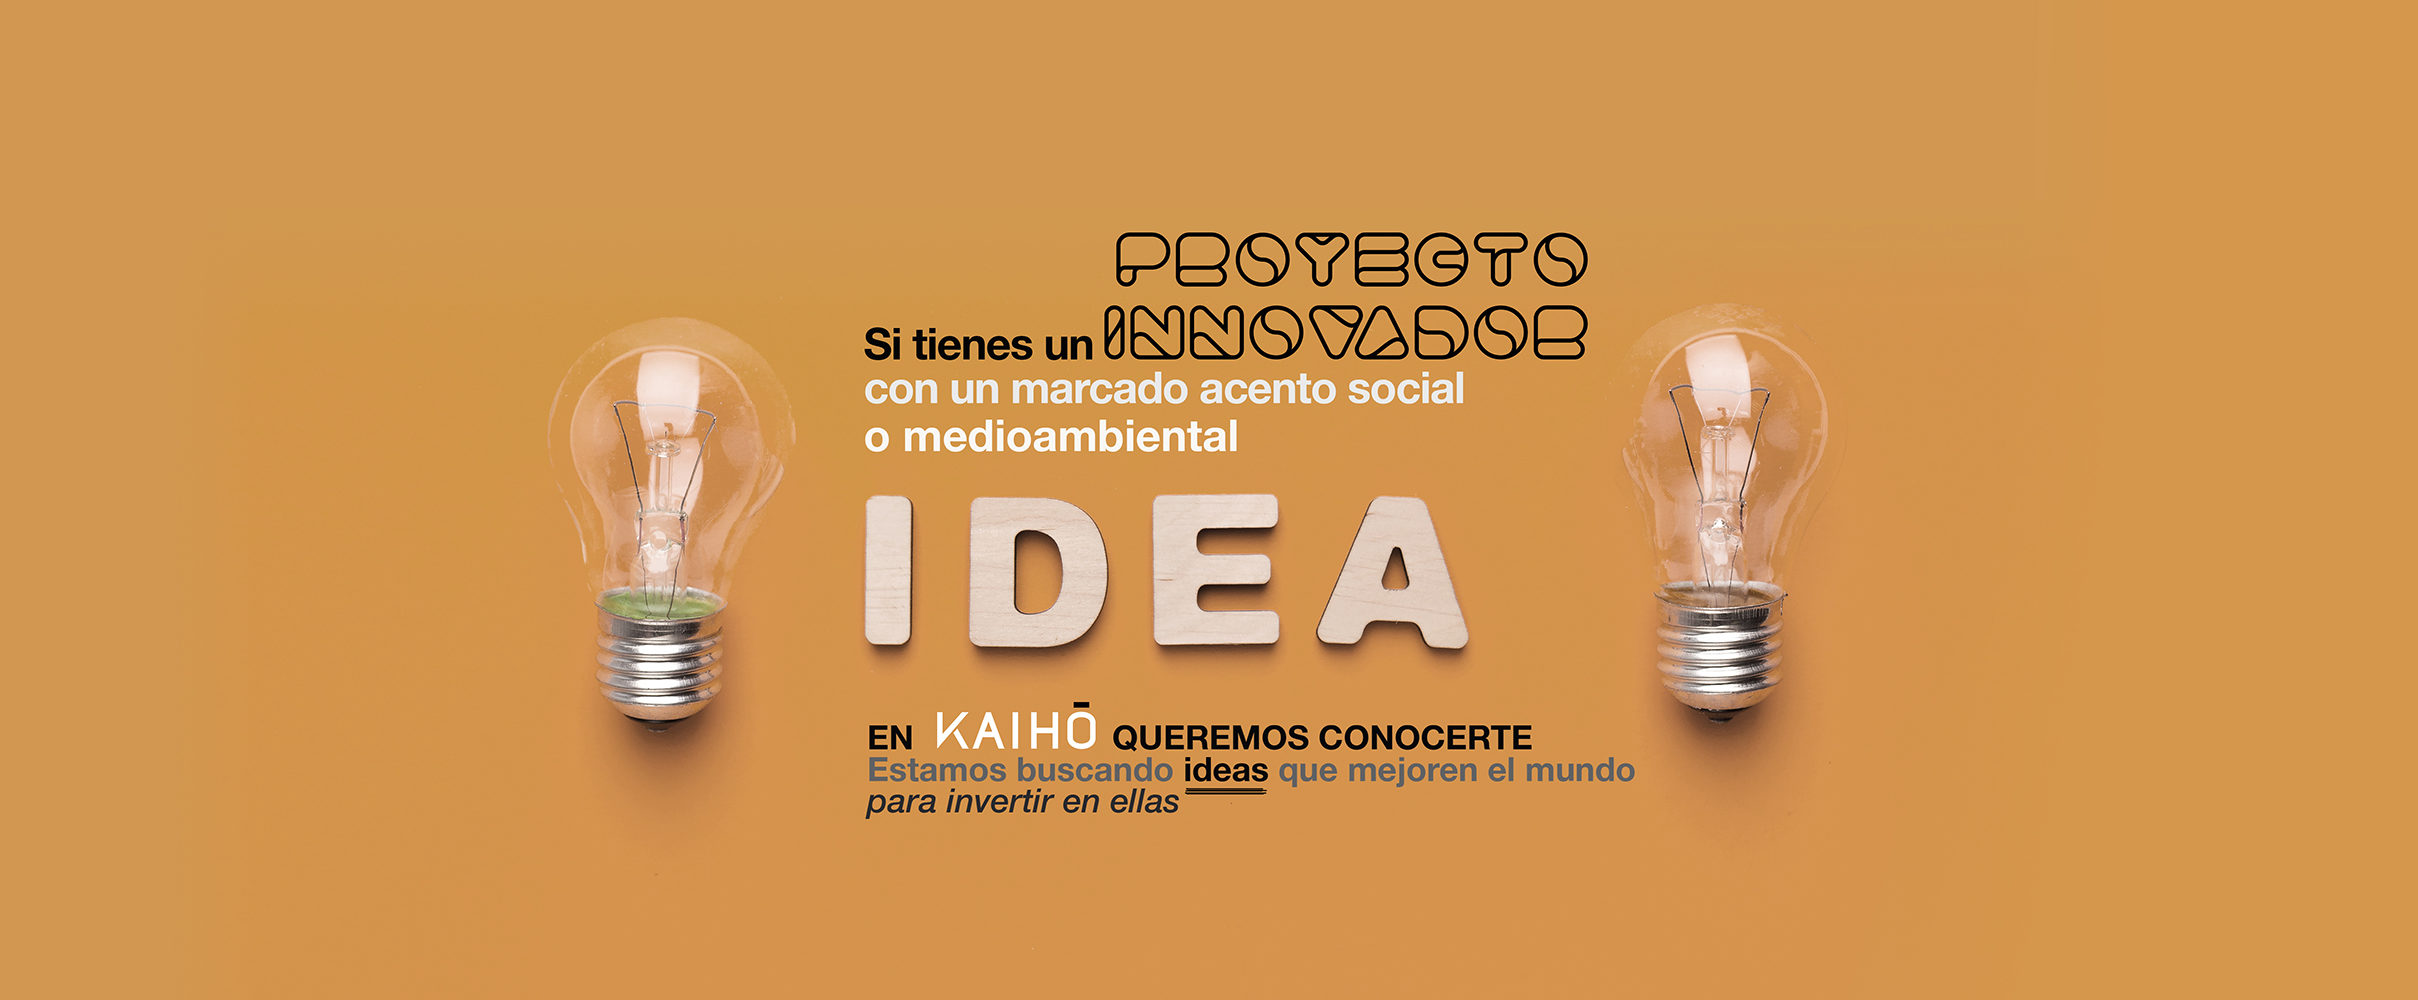 Si tienes un proyecto innovador con un marcado acento social o medioambiental, en Kaiho queremos conocerte. Buscamos ideas que mejoren el mundo para invertir en ellas.